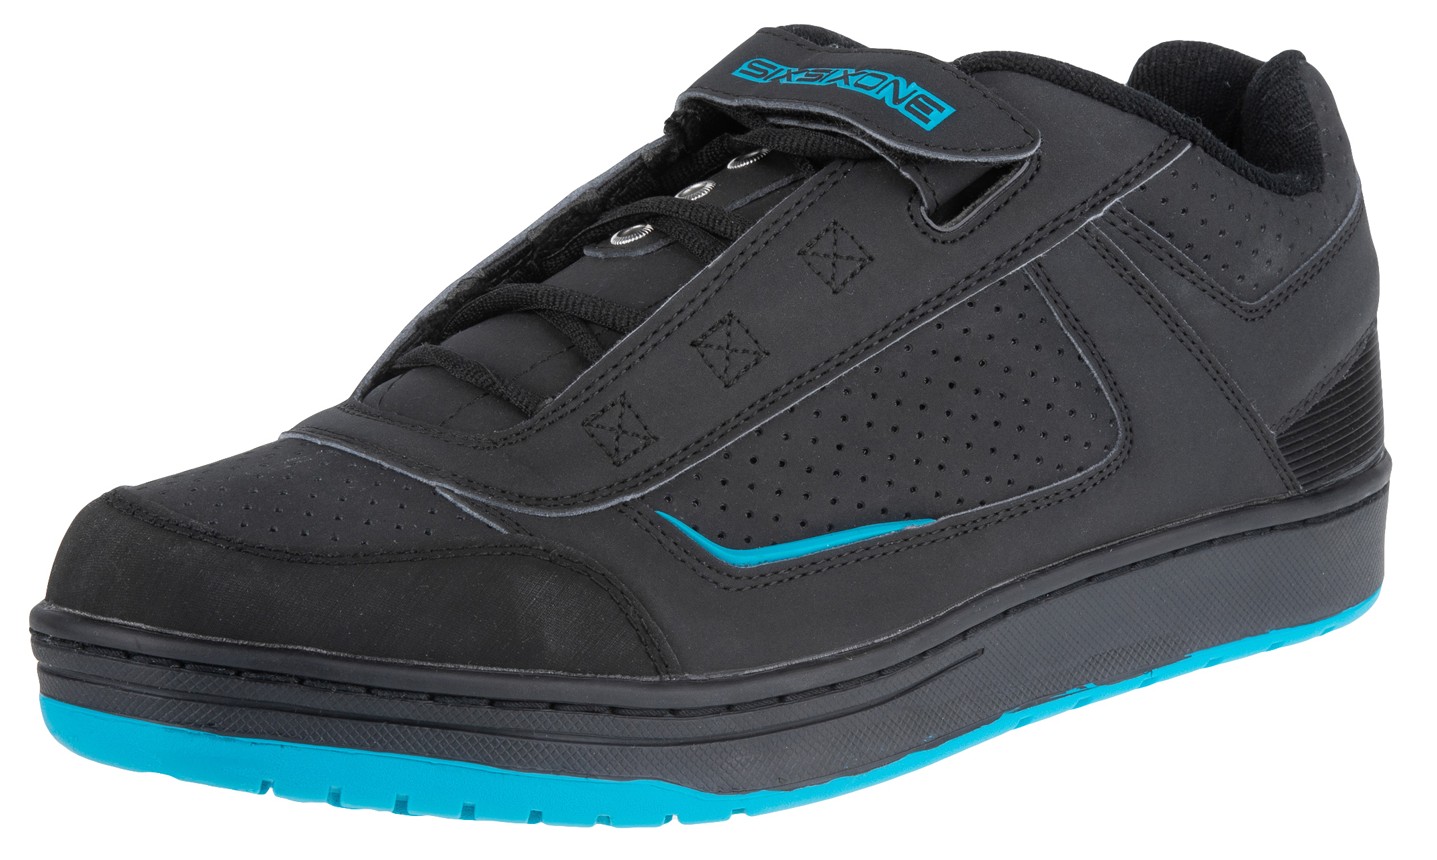 Фотография Велосипедная обувь SixSixOne Filter SPD, Черный/Голубой, US 12 / EU 45,5